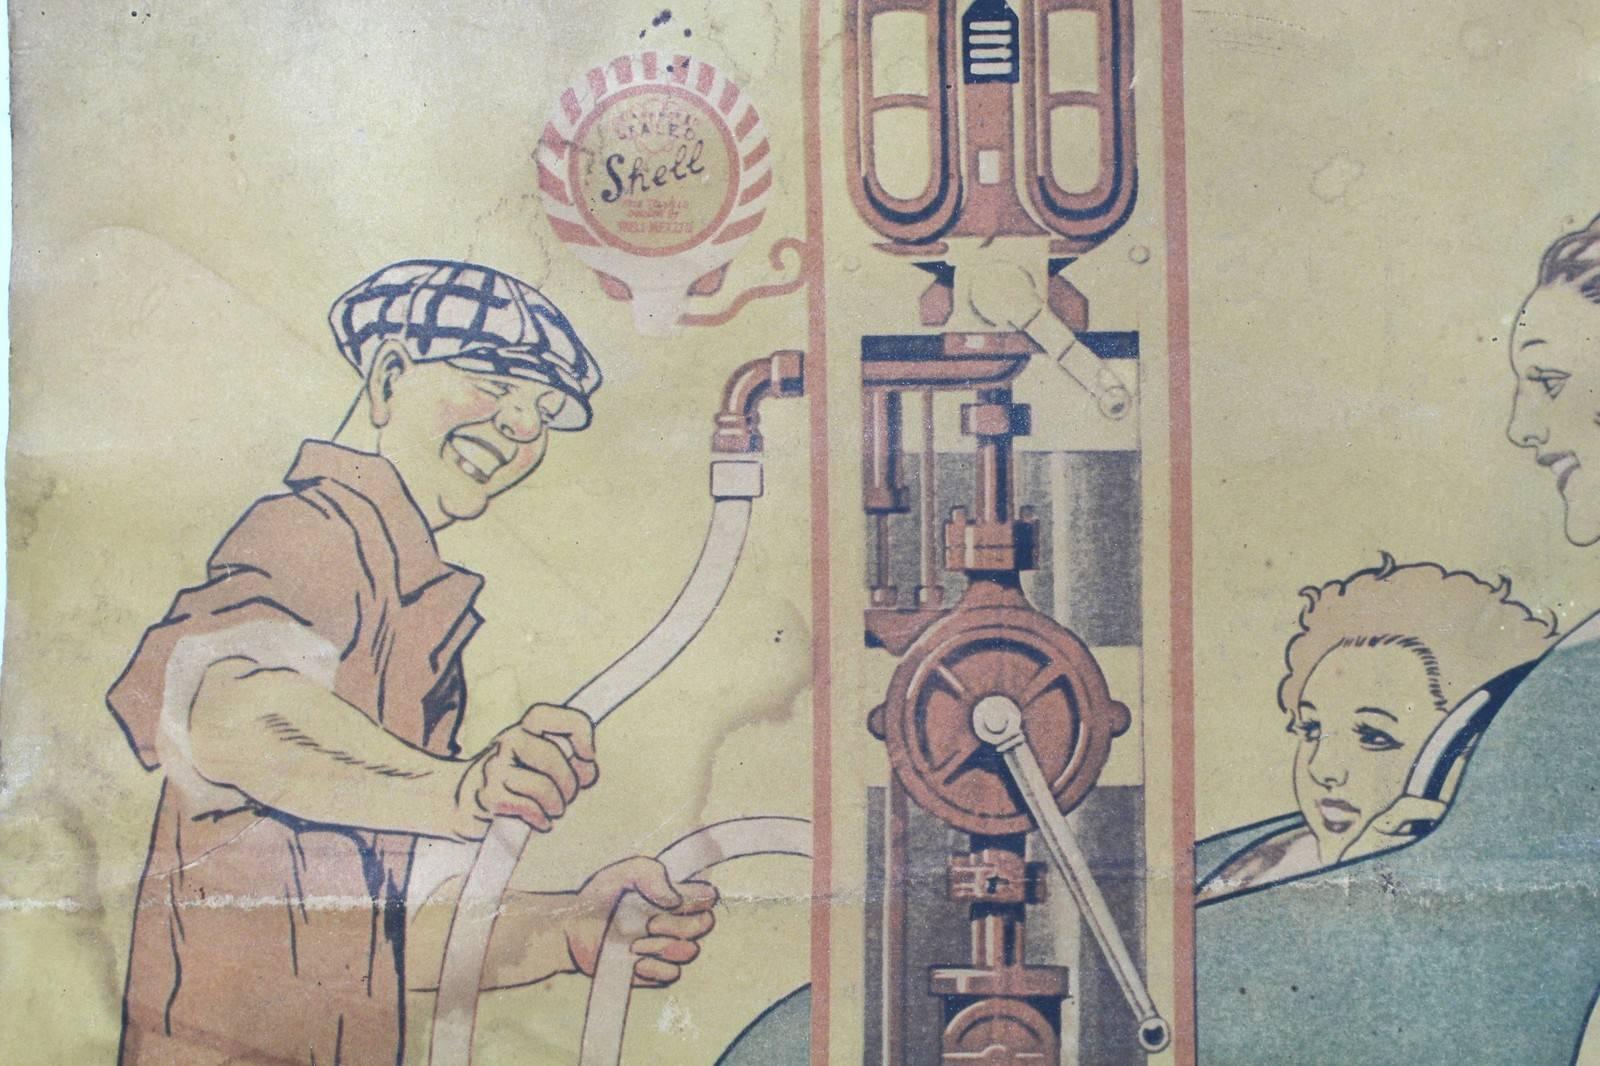 Vintage-Poster, Shell, Motor, Öl, Gasoline, von Rene Vincent, von 1926 2